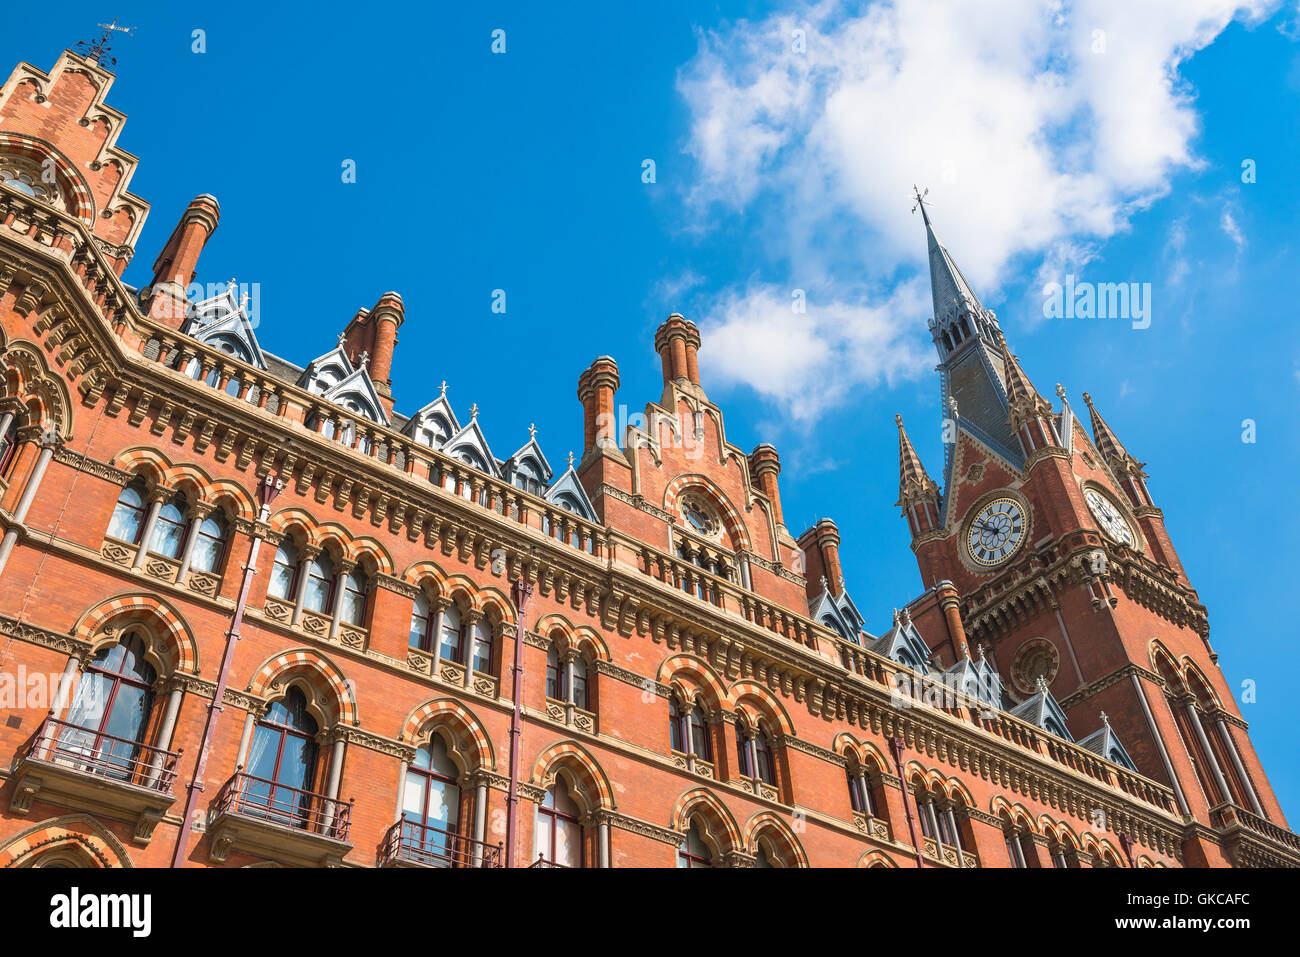 L'architecture victorienne, Londres, détail de l'époque victorienne de style gothique de l'hôtel St Pancras à King's Cross, London,UK. Banque D'Images